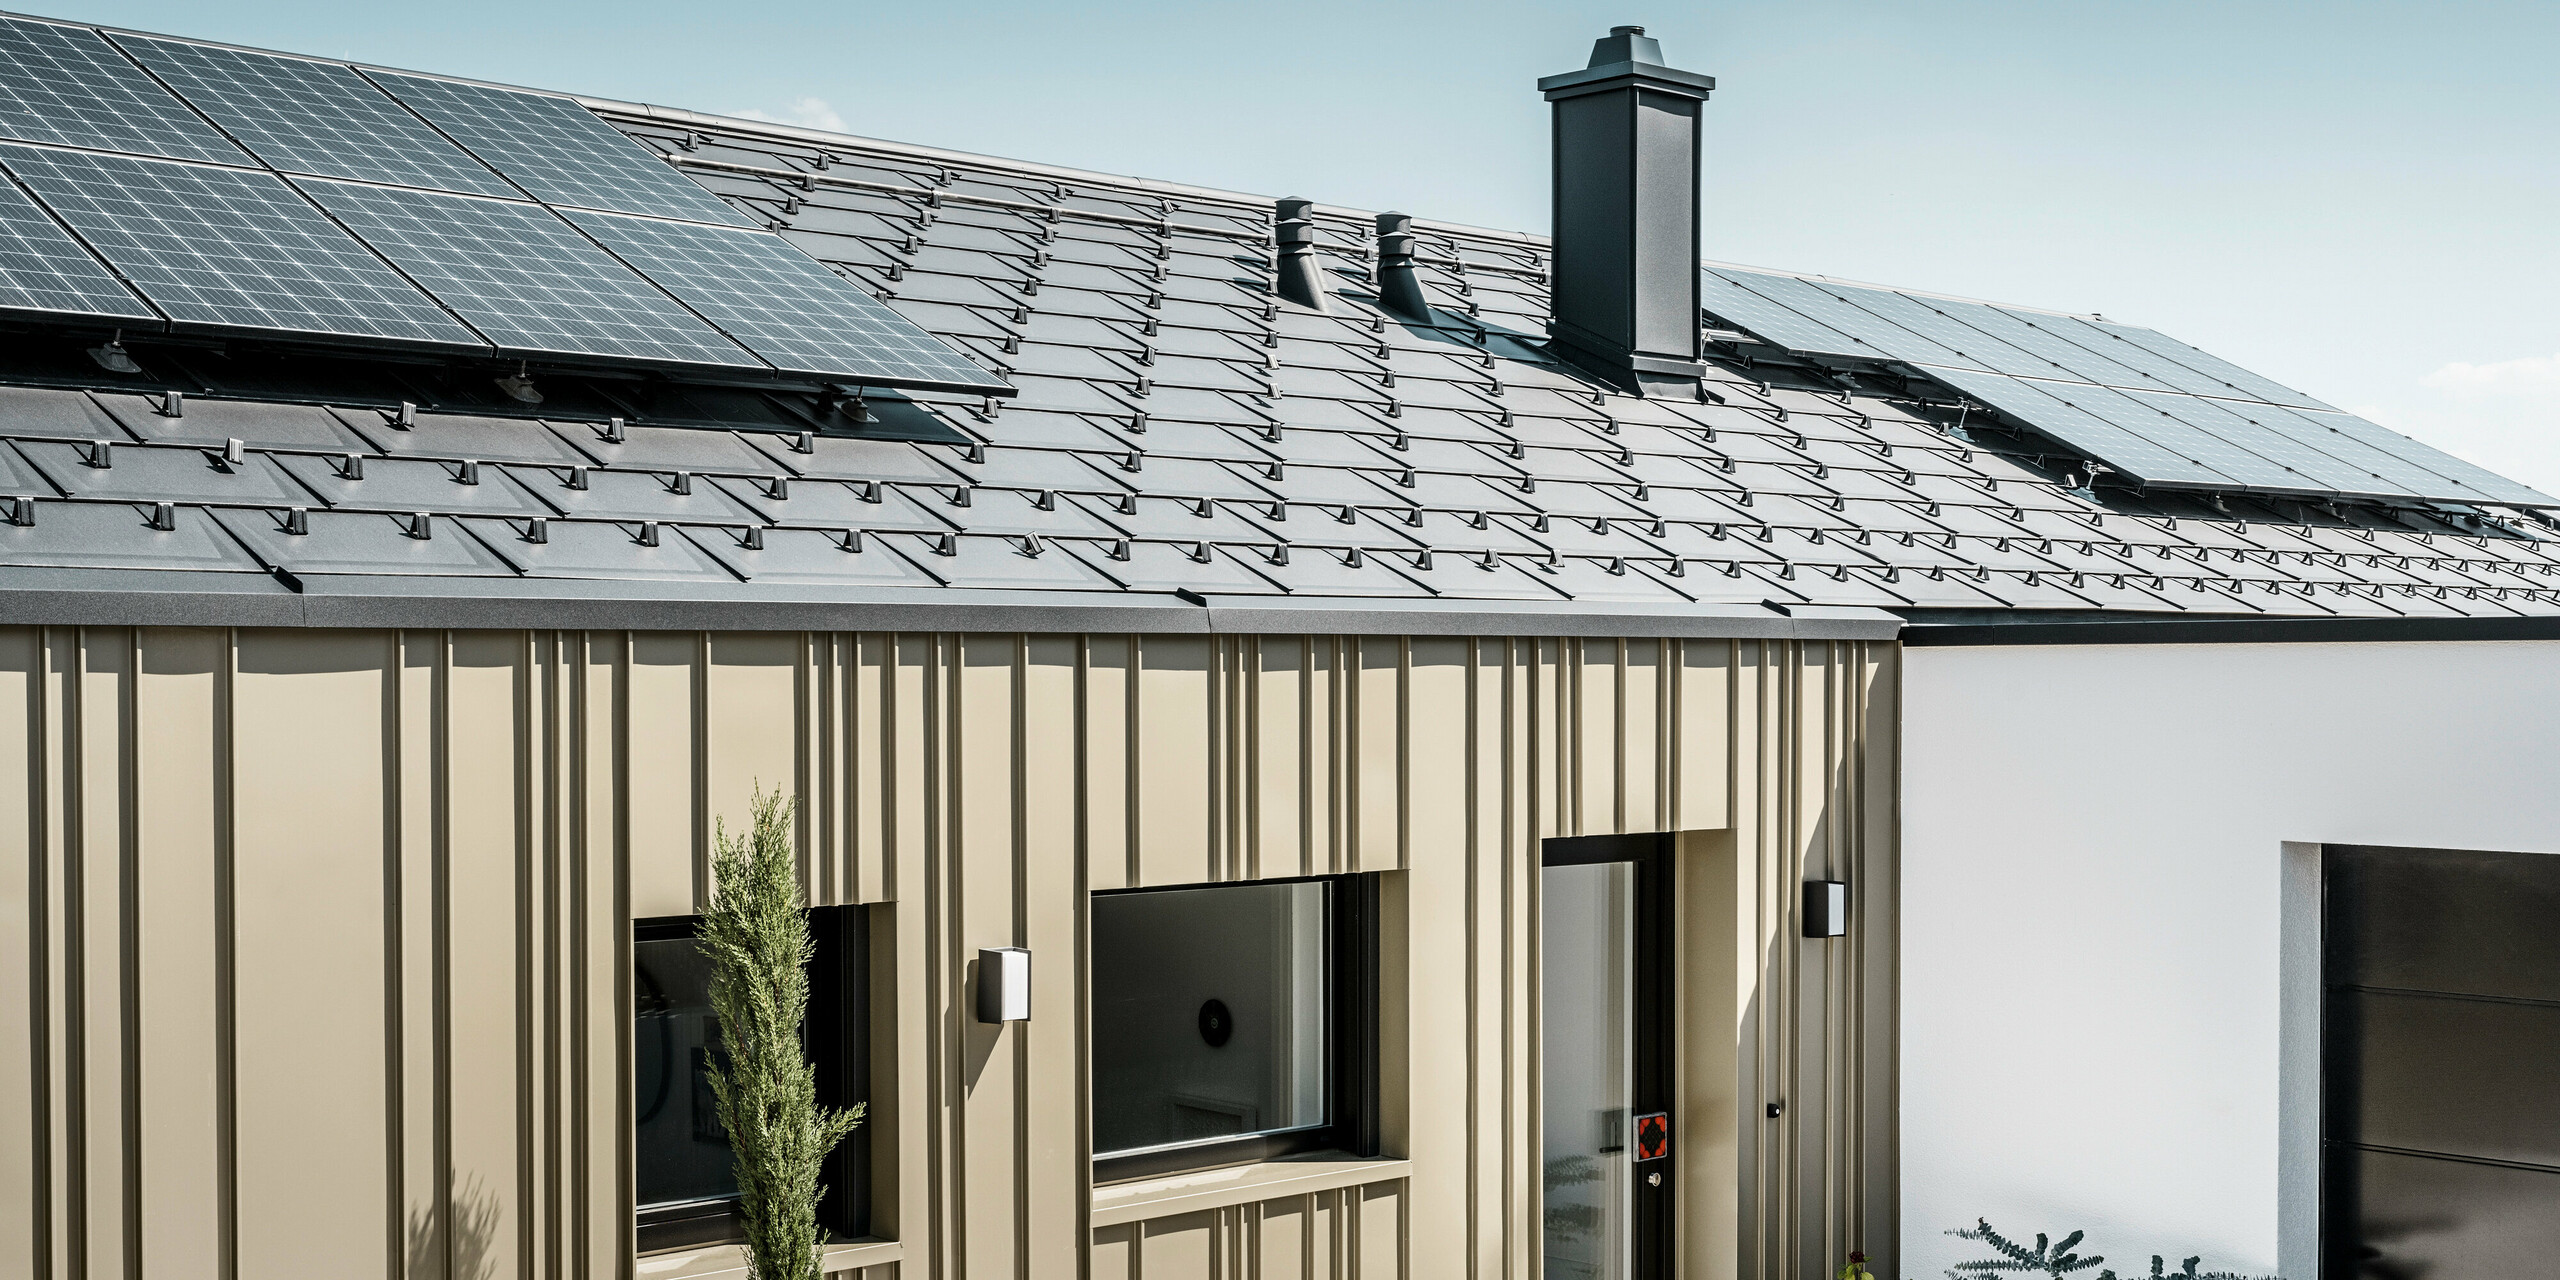 Energieeffizientes Einfamilienhaus mit einem langlebigen PREFA Aluminiumdach in Anthrazit, ausgestattet mit Photovoltaikmodulen. Die zukunftsweisende Wohnlösung wird zudem von einer robusten und widerstandsfähigen PREFA Aluminiumfassade in Lichtbronze betont. Die Fassade weist eine vertikale Strukturierung auf, die durch die anthrazitfarbene PREFA Dachplatte R.16 ergänzt wird. Diese Kombination bietet nicht nur ästhetische Schönheit, sondern auch Nachhaltigkeit und Energieunabhängigkeit in der modernen Architektur. Ergänzt wird der nachhaltige Bau durch eine PV-Anlage auf dem Dach.